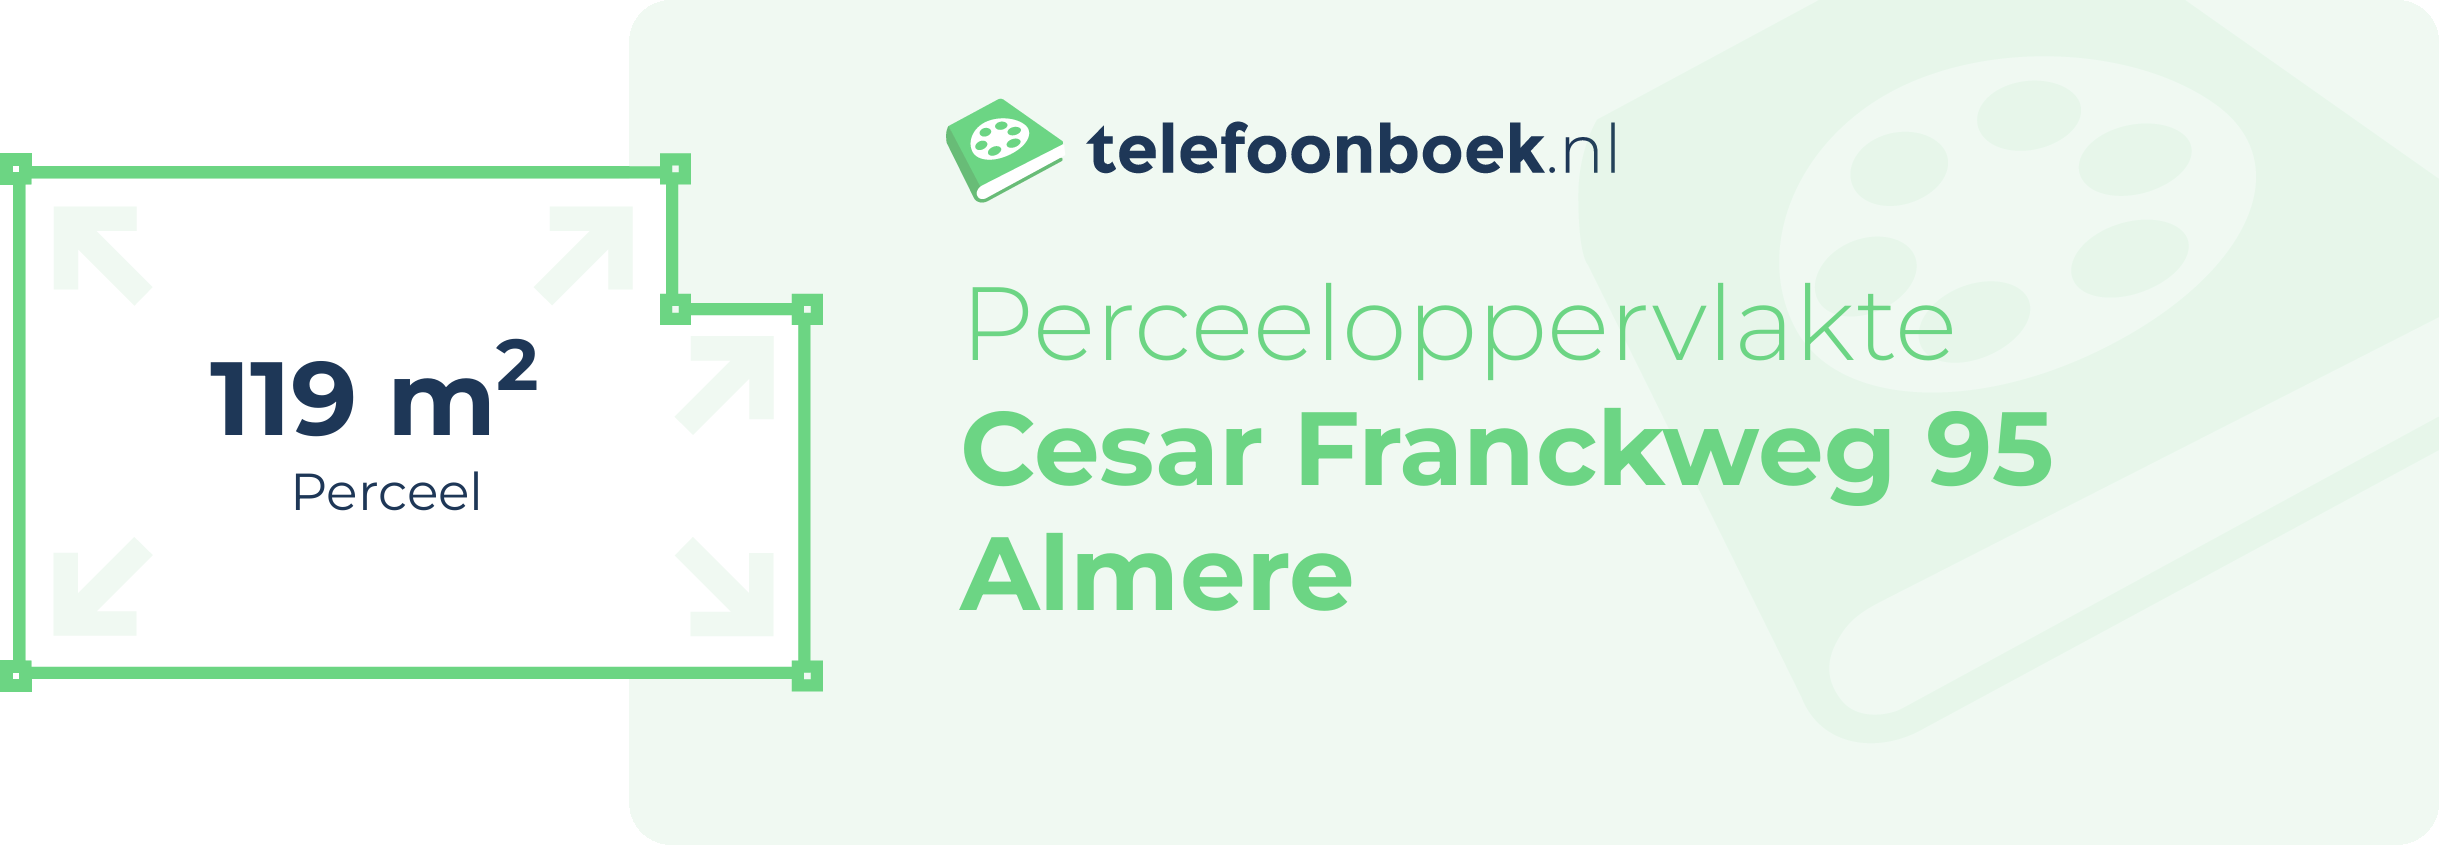 Perceeloppervlakte Cesar Franckweg 95 Almere